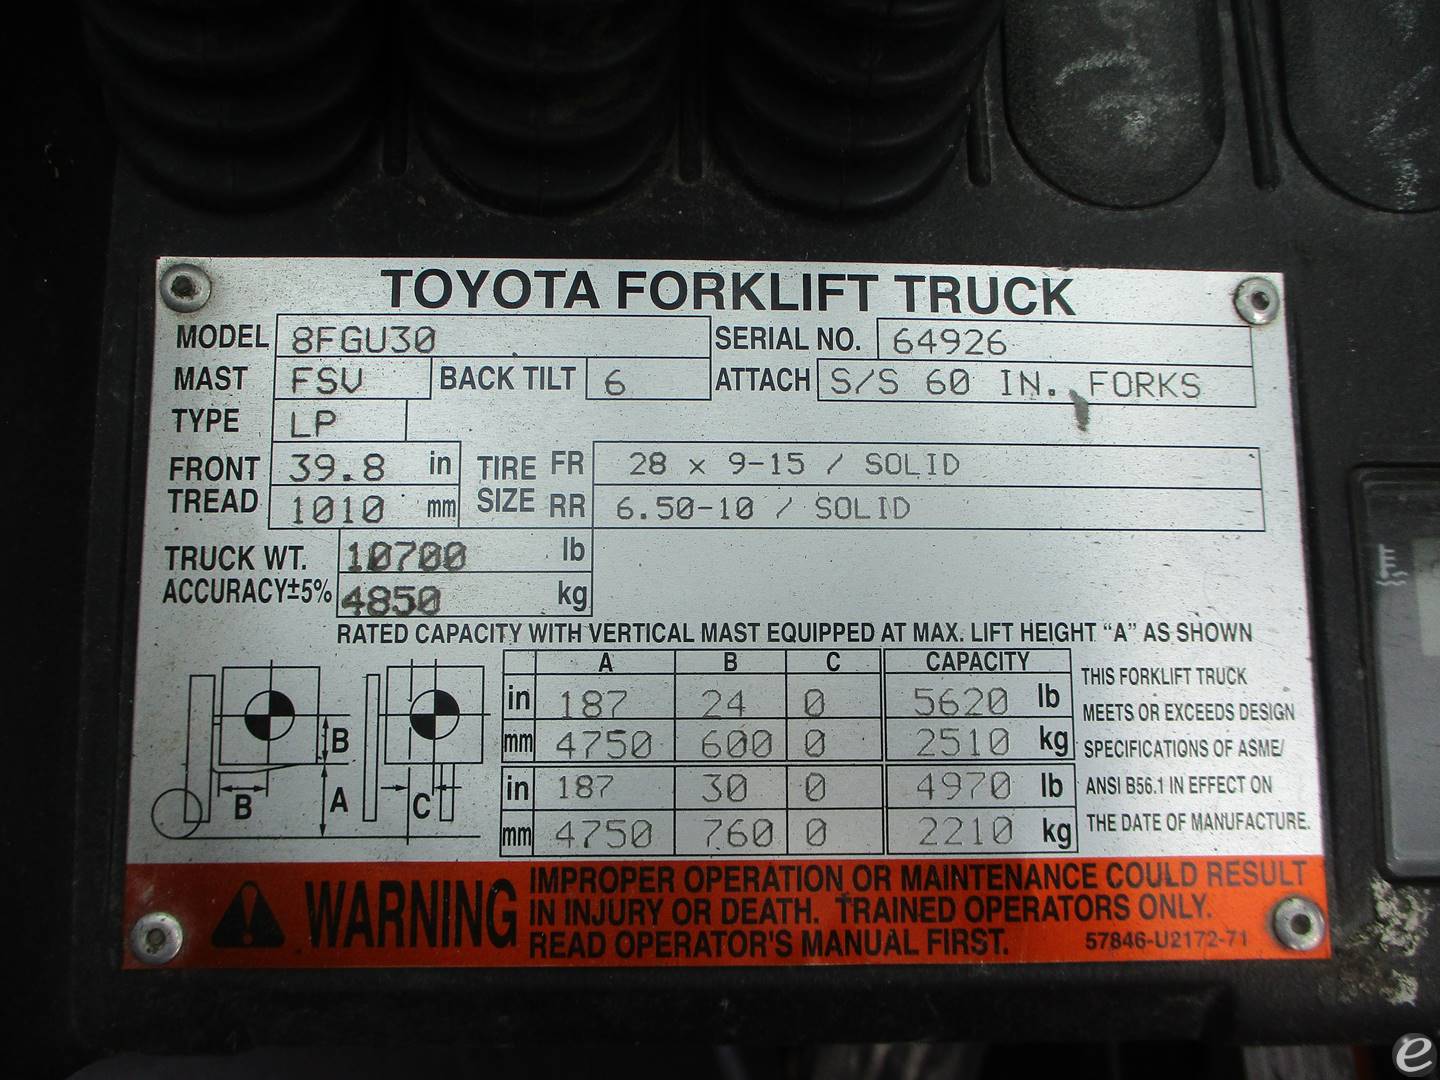 2018 Toyota 8FGU30 Pneumatic Tire Forklift - 123Forklift